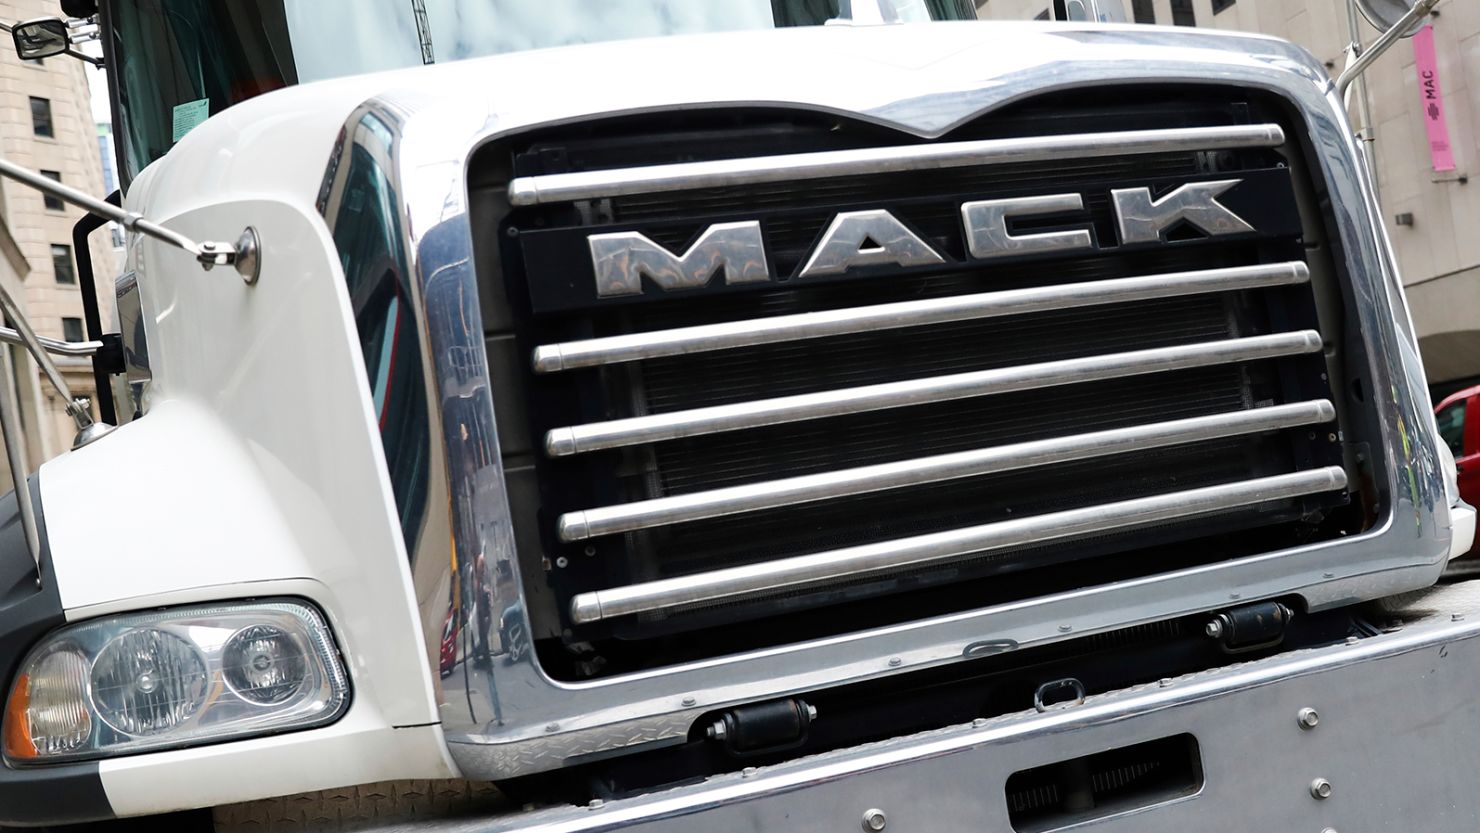 Mack Trucks strike narrowly avoided as company reaches tentative